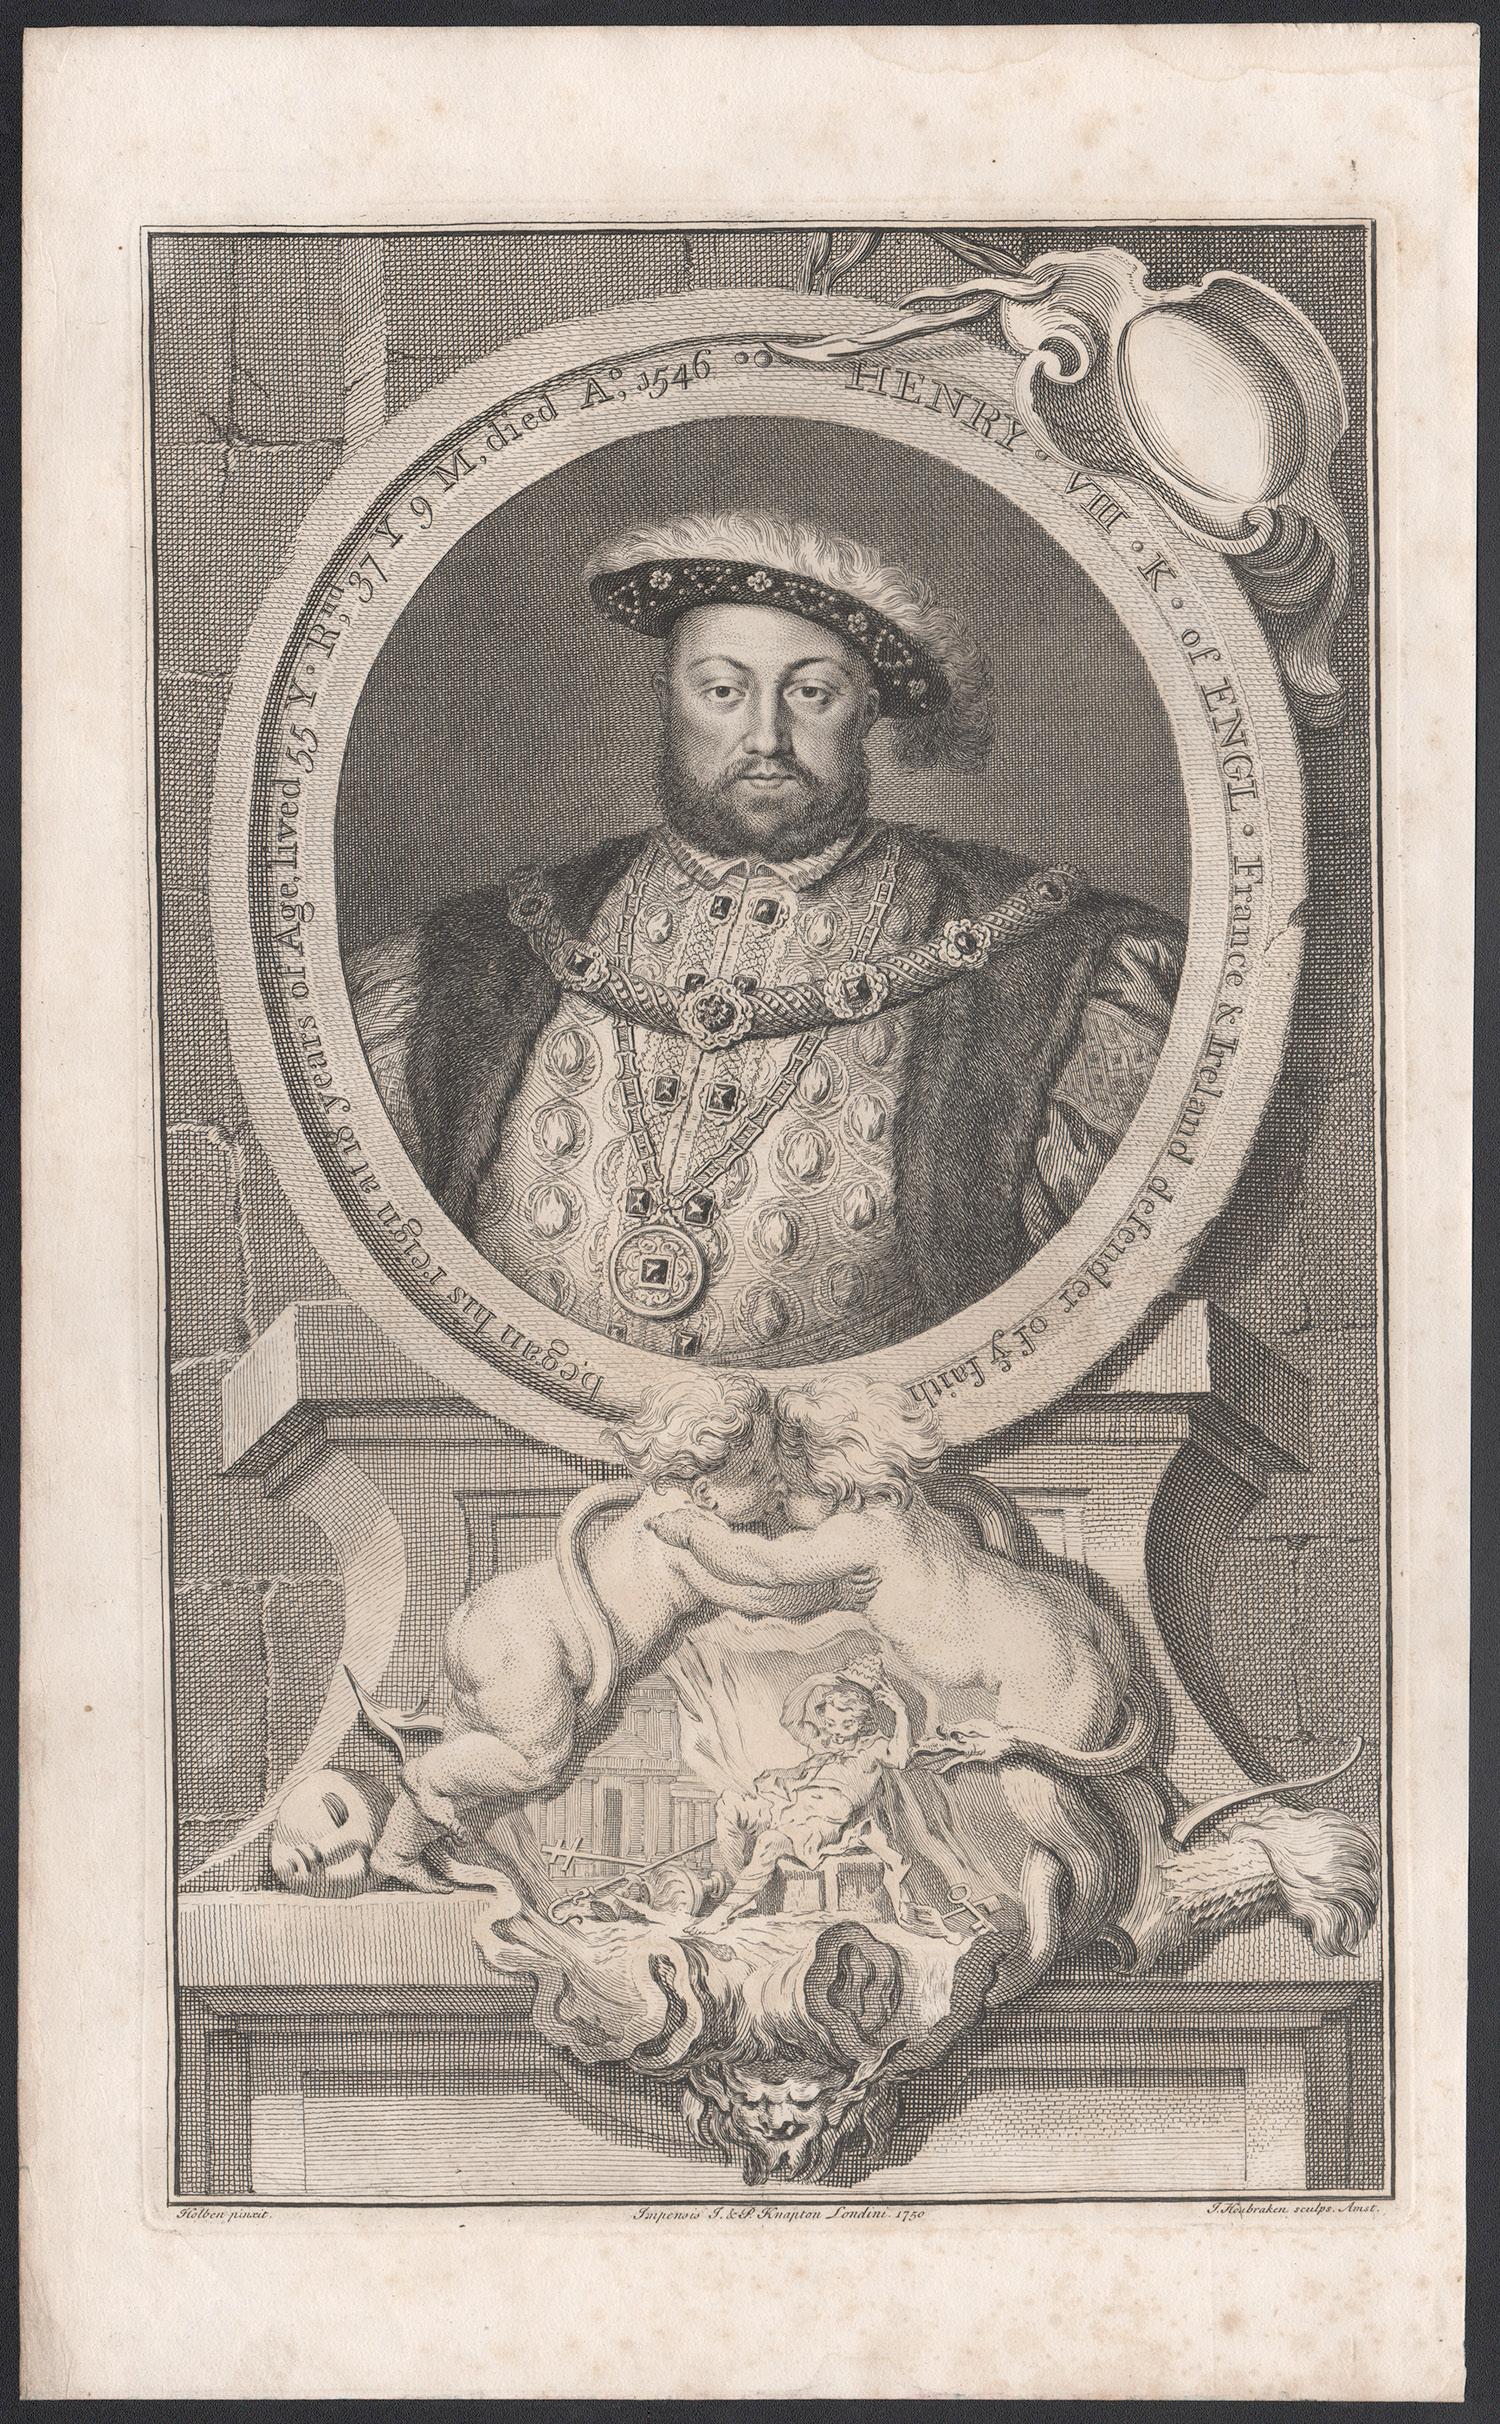 Henry VIII, portrait engraving, c1820 - Print by Jacobus Houbraken 